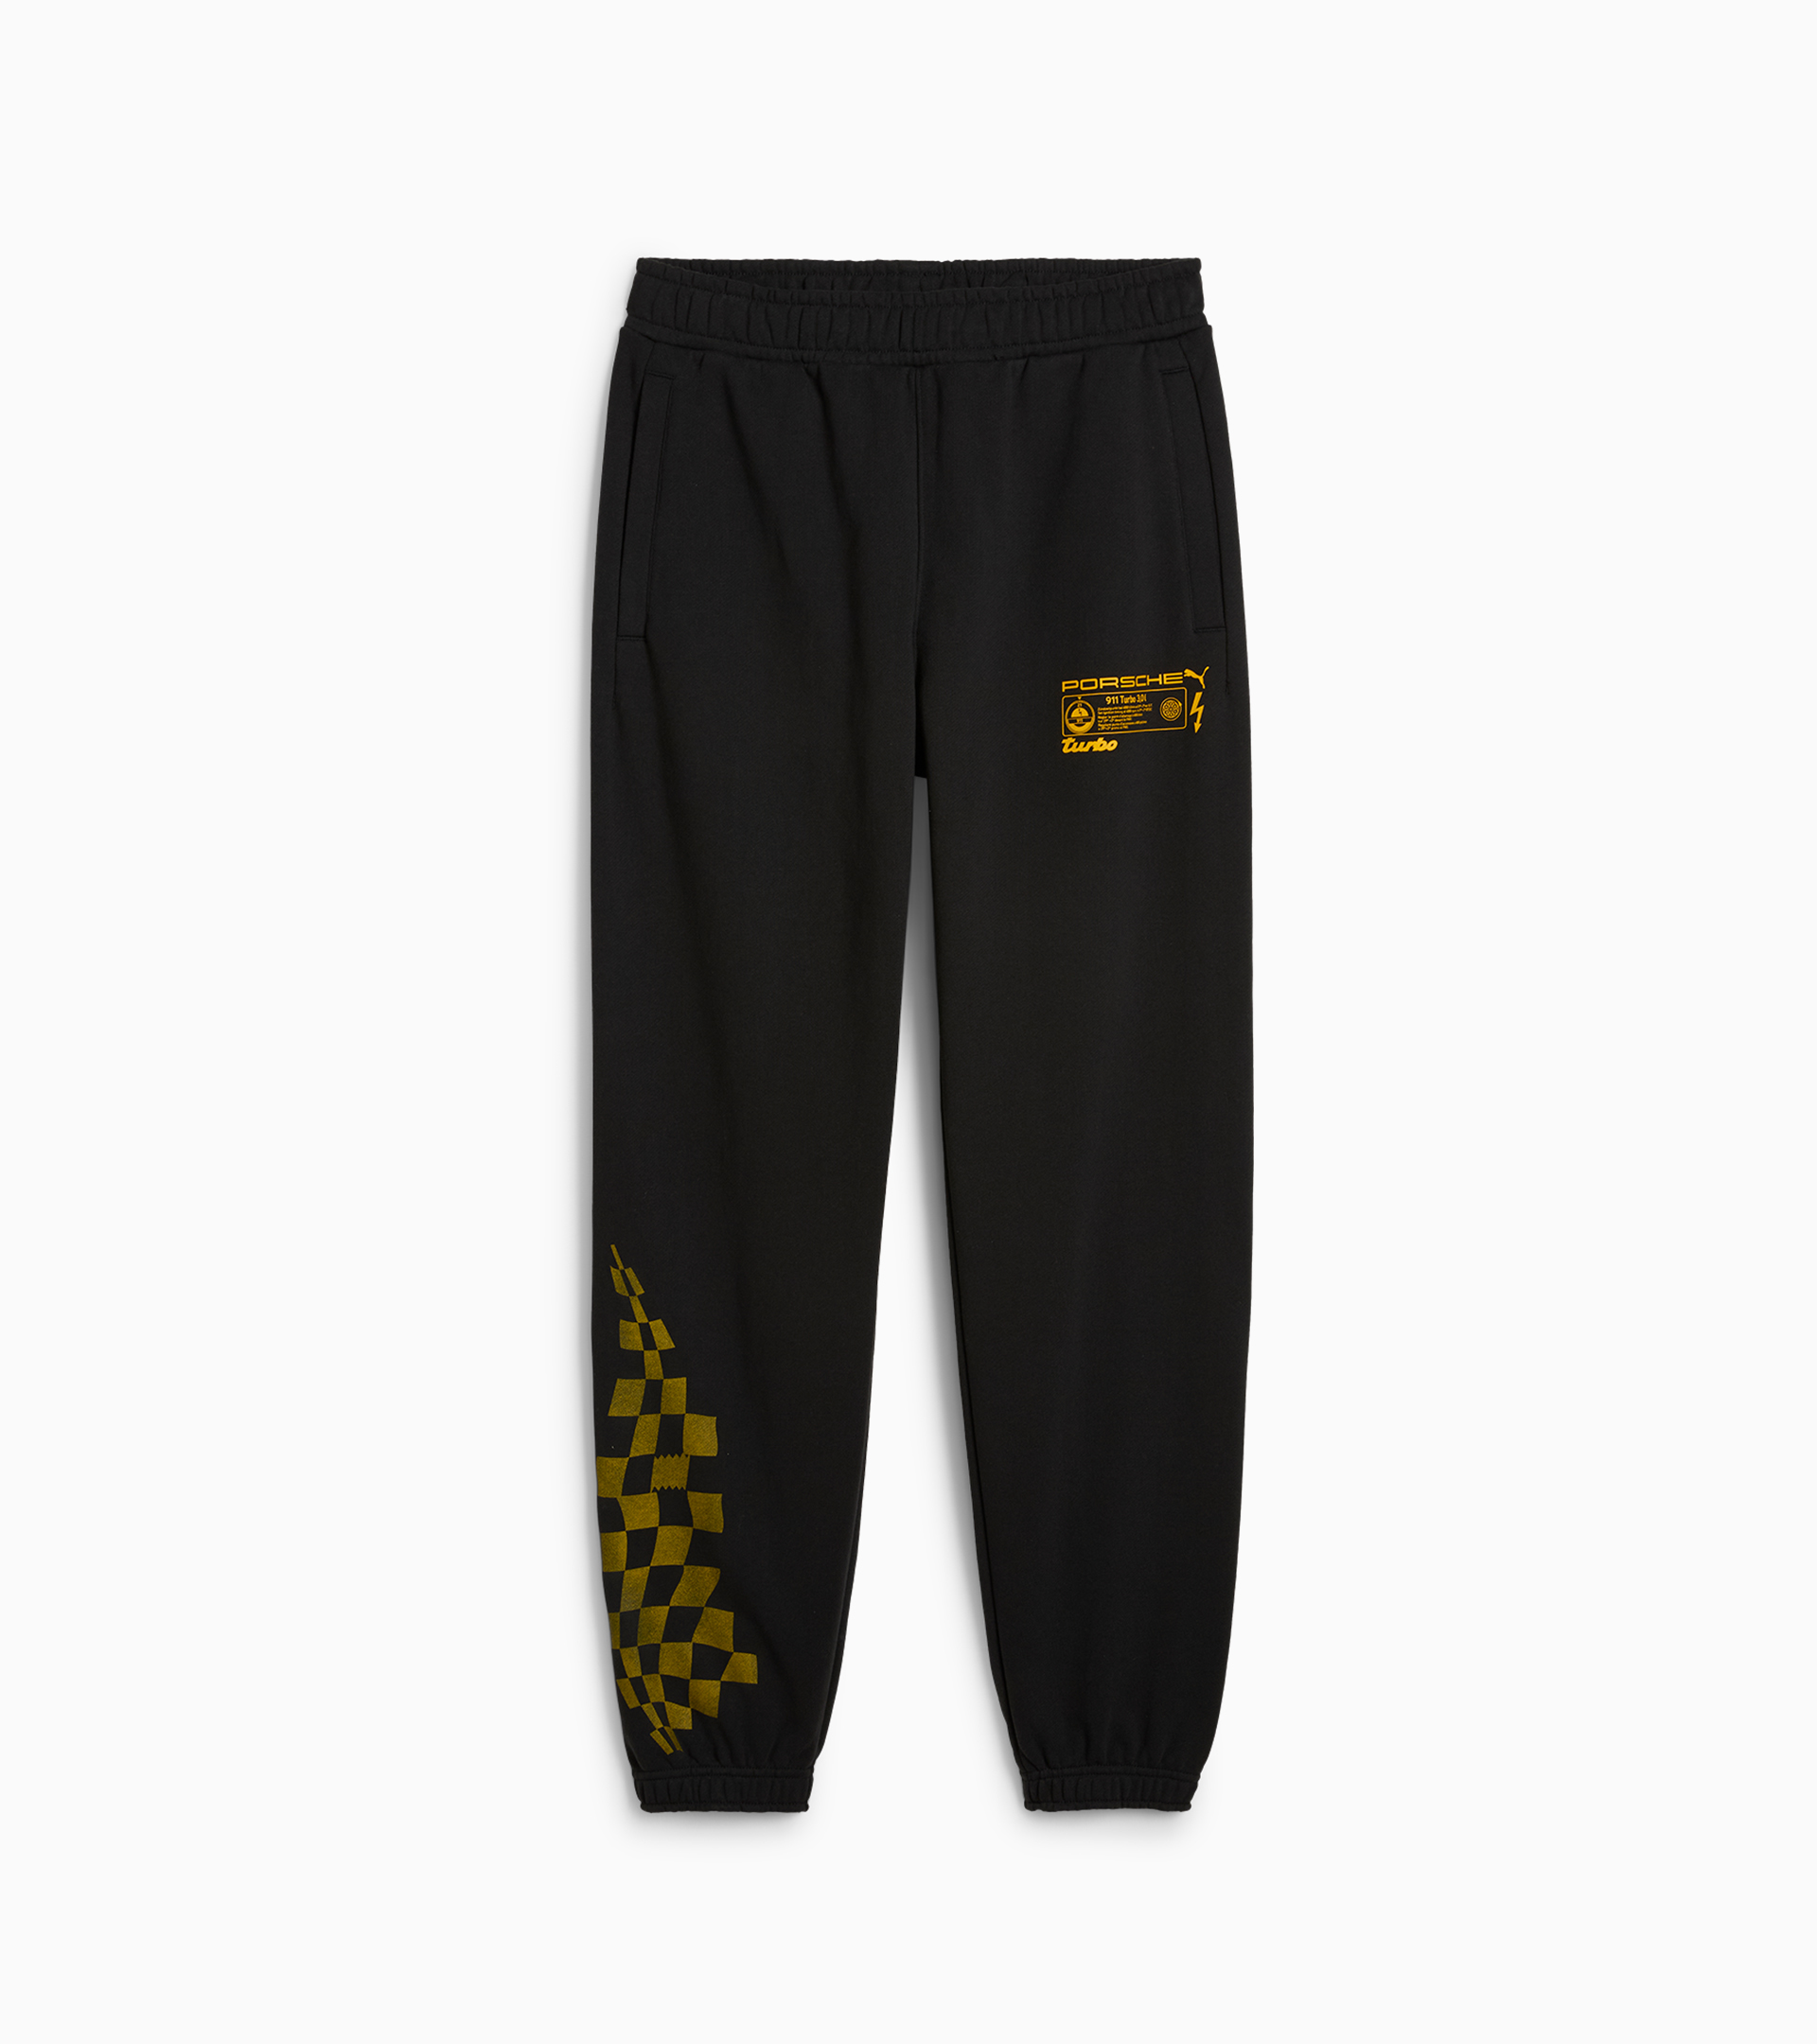 PUMA x PORSCHE Men’s Basketball Sweatpants - Exclusive Sports Pants for ...